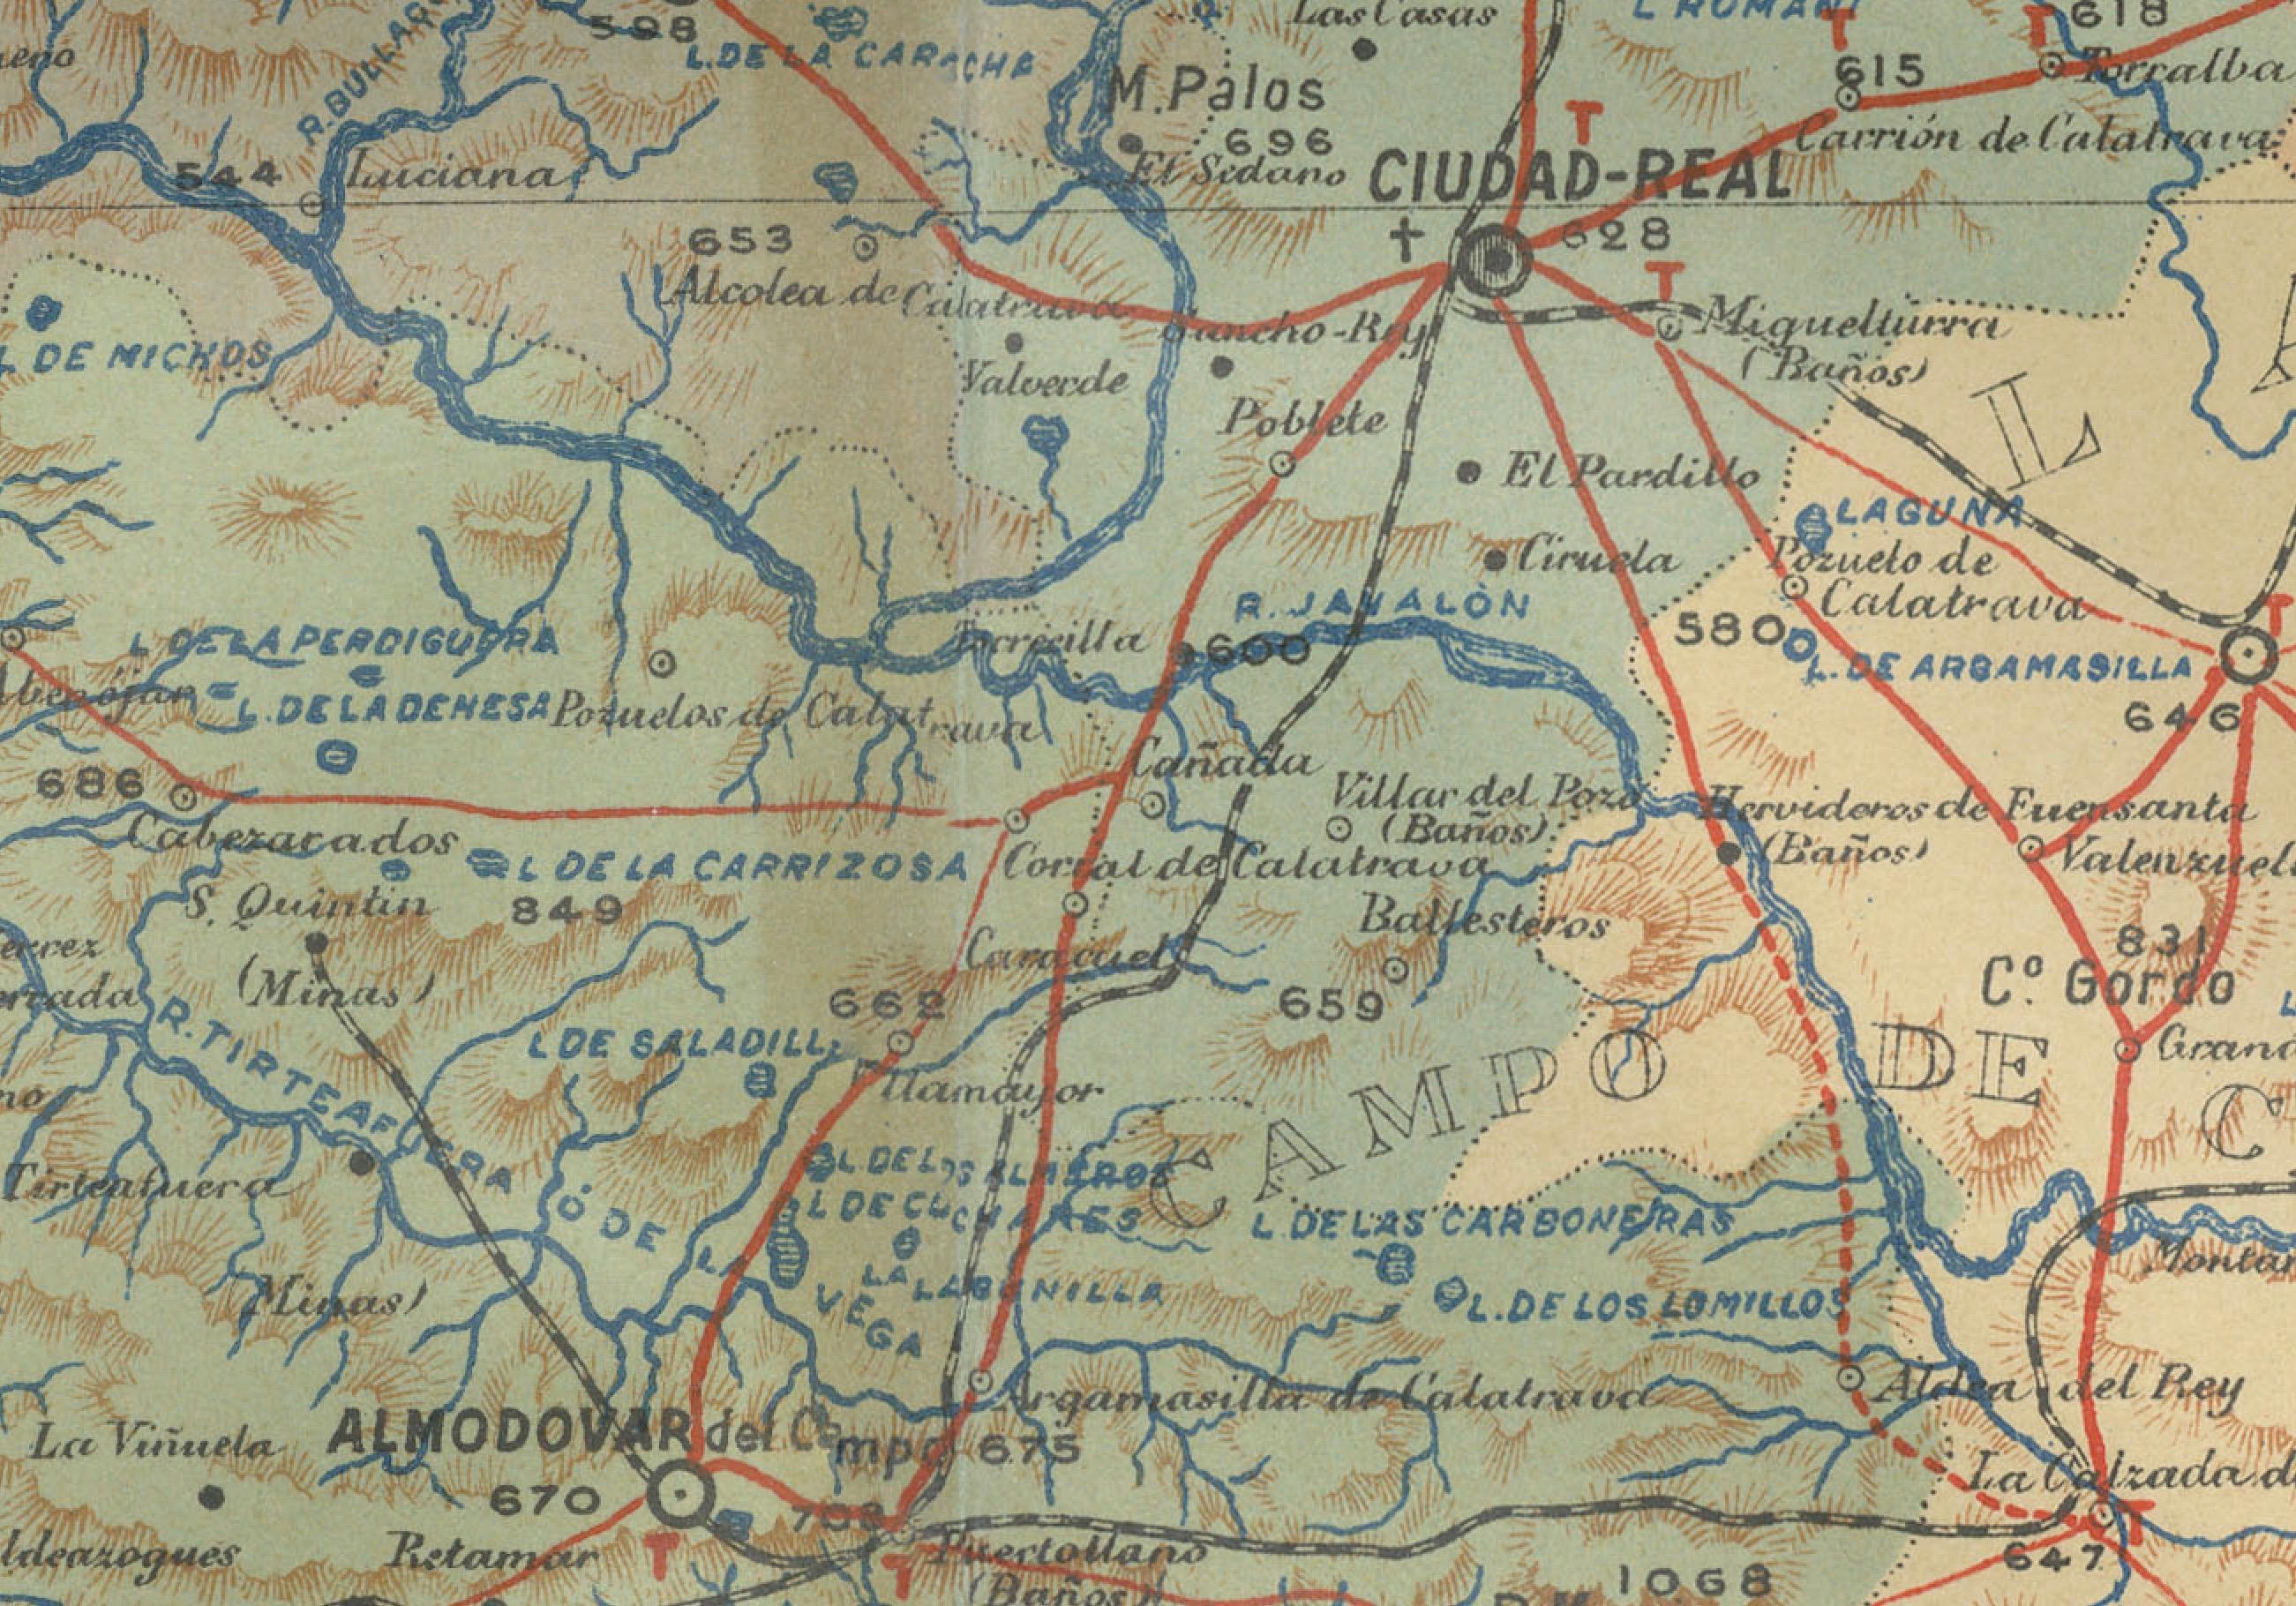 Diese original antike Karte zeigt die Provinz Ciudad Real in der autonomen Gemeinschaft Kastilien-La Mancha in Zentralspanien im Jahr 1902. Es enthält mehrere bemerkenswerte Merkmale:

Das Gelände ist mit Höhenlinien dargestellt, die die